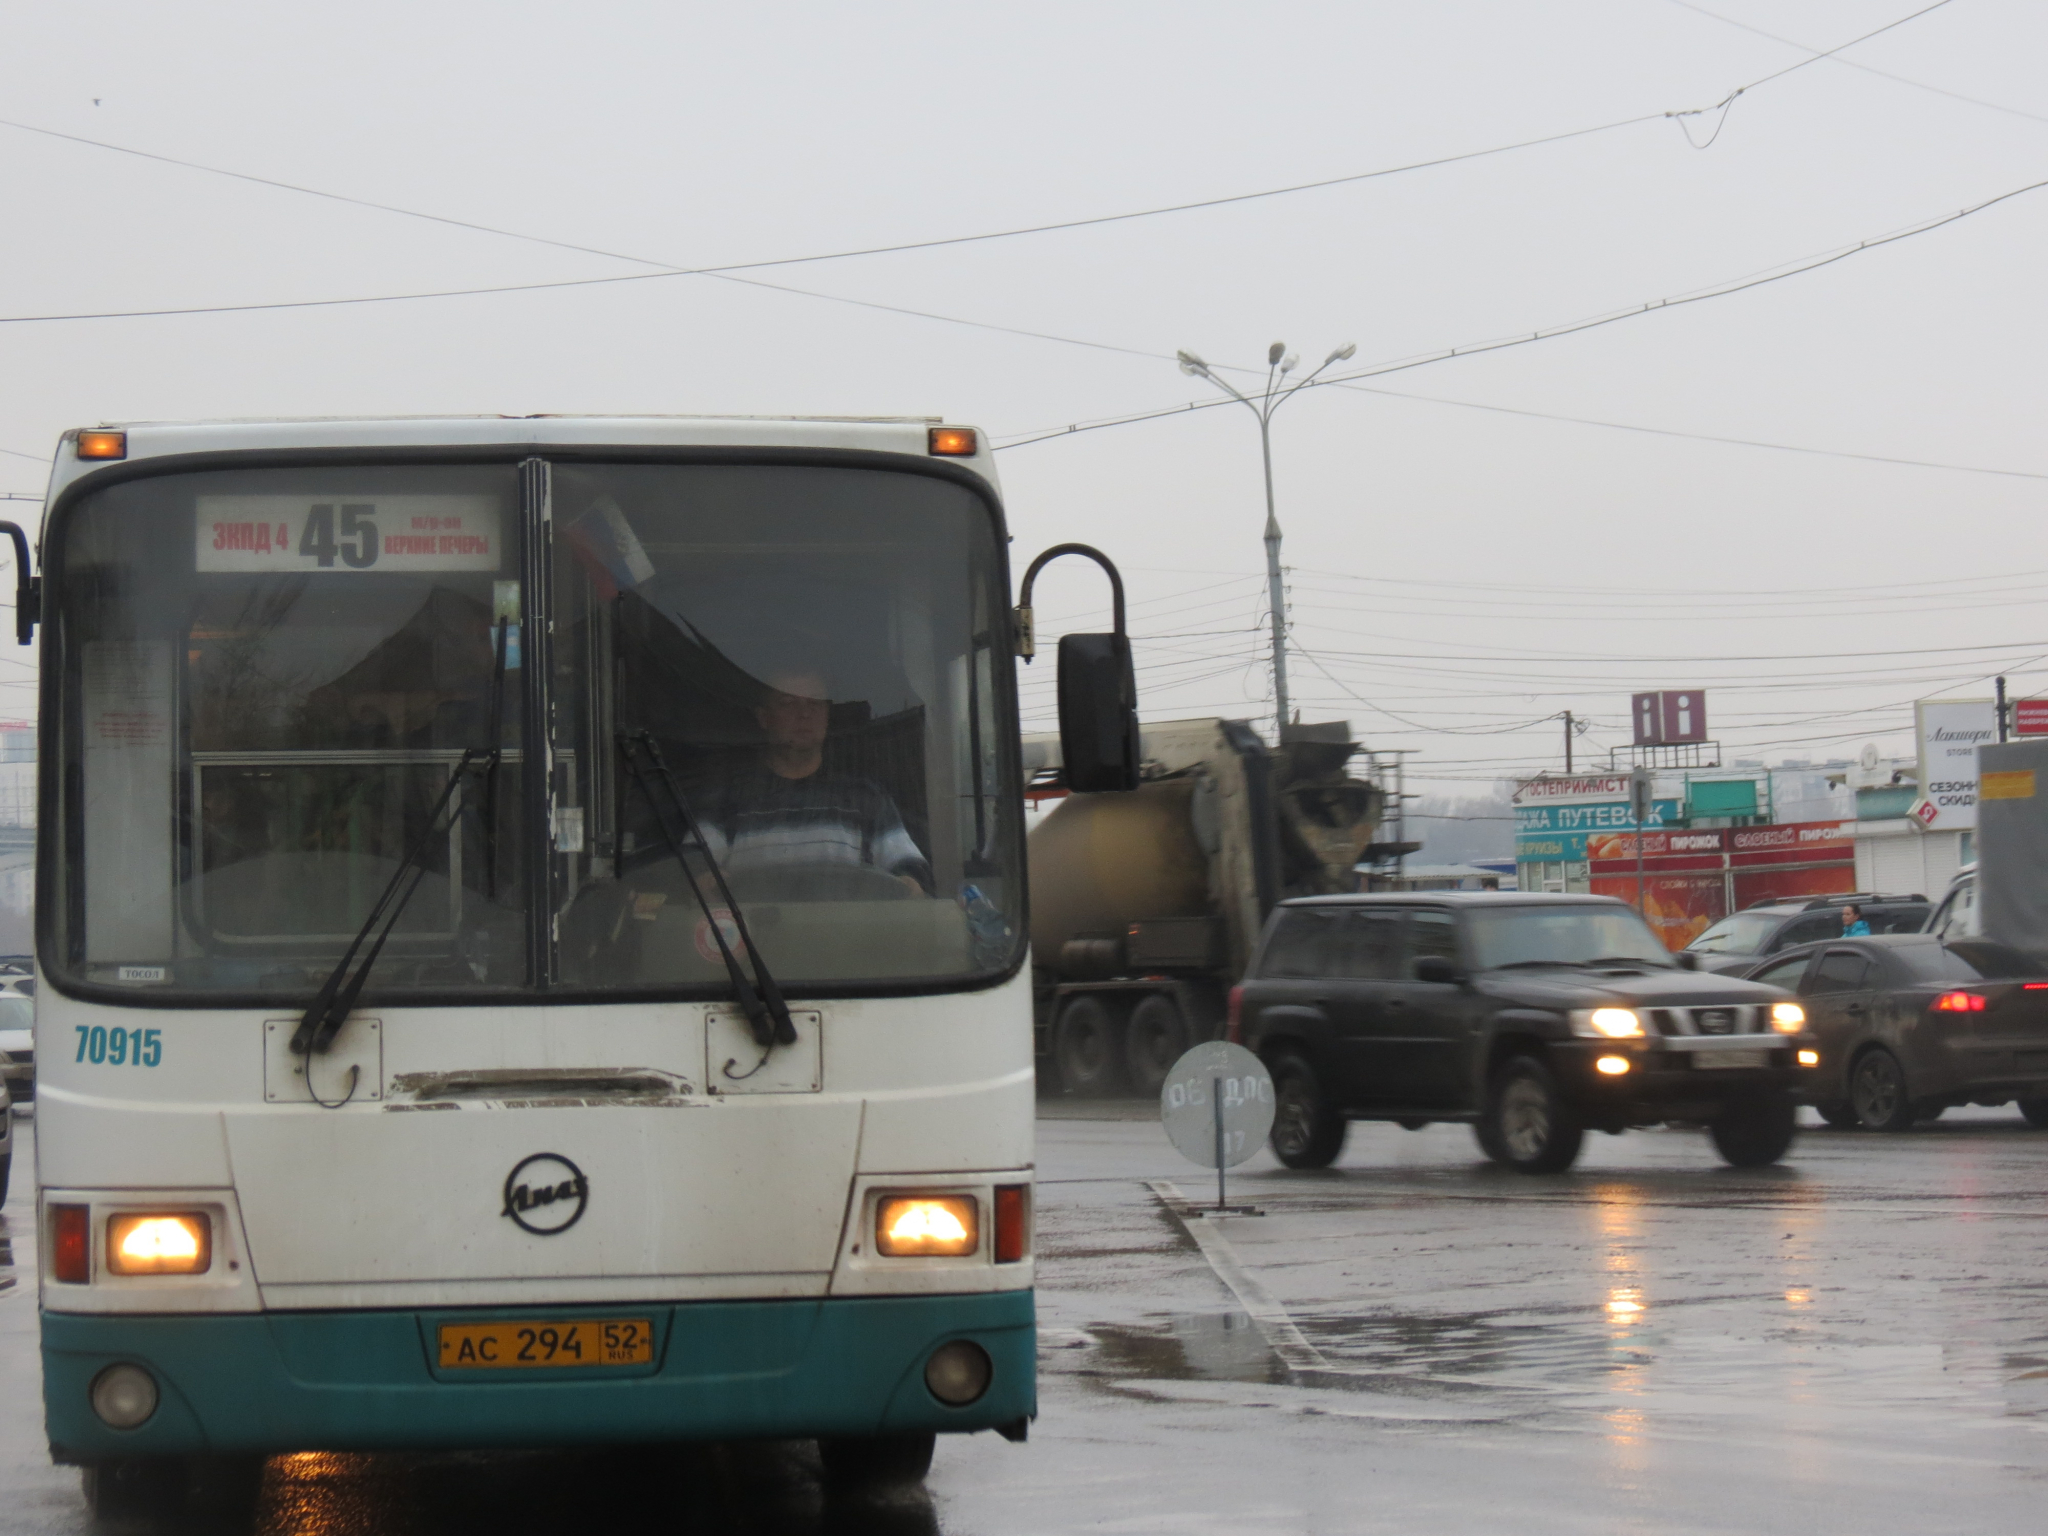 Опубликована схема транспортной развязки на улице Циолковского в Нижнем Новгороде